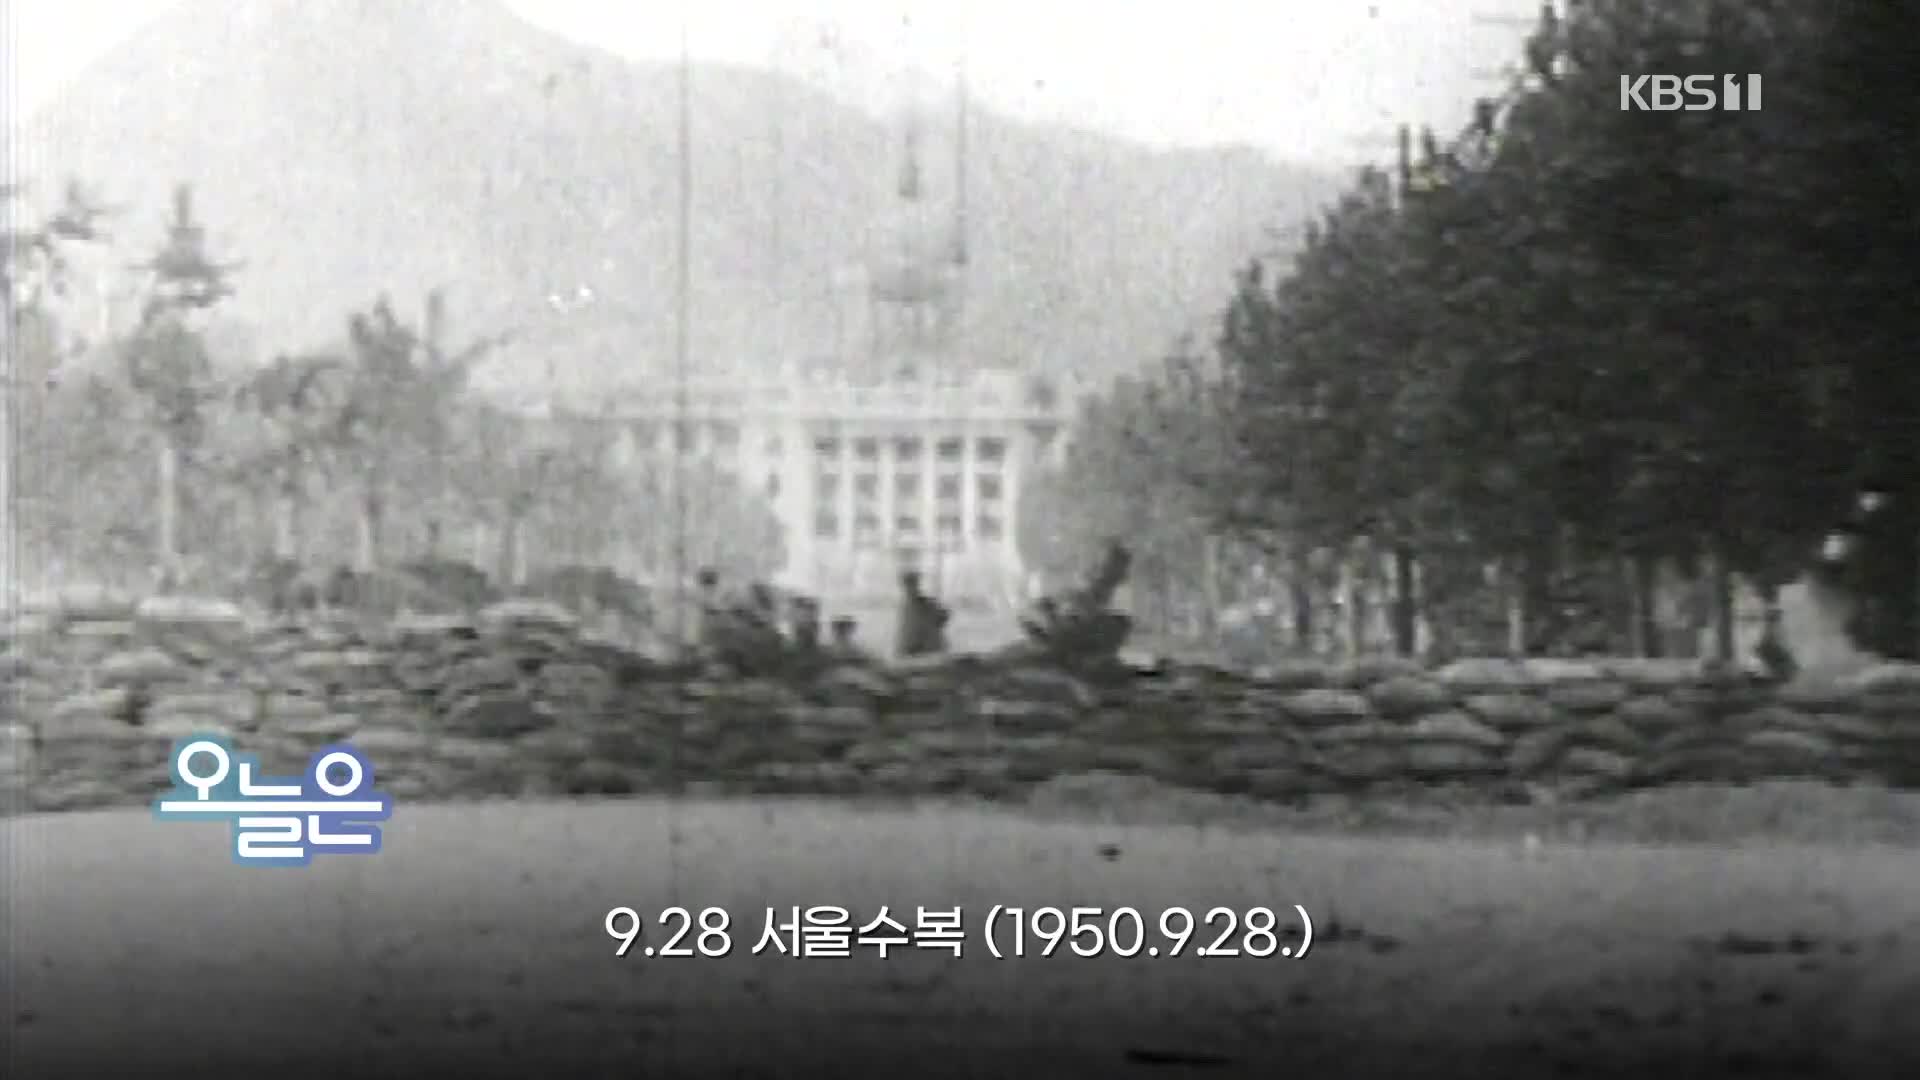 [오늘은] 9.28 서울수복 (1950.9.28.)